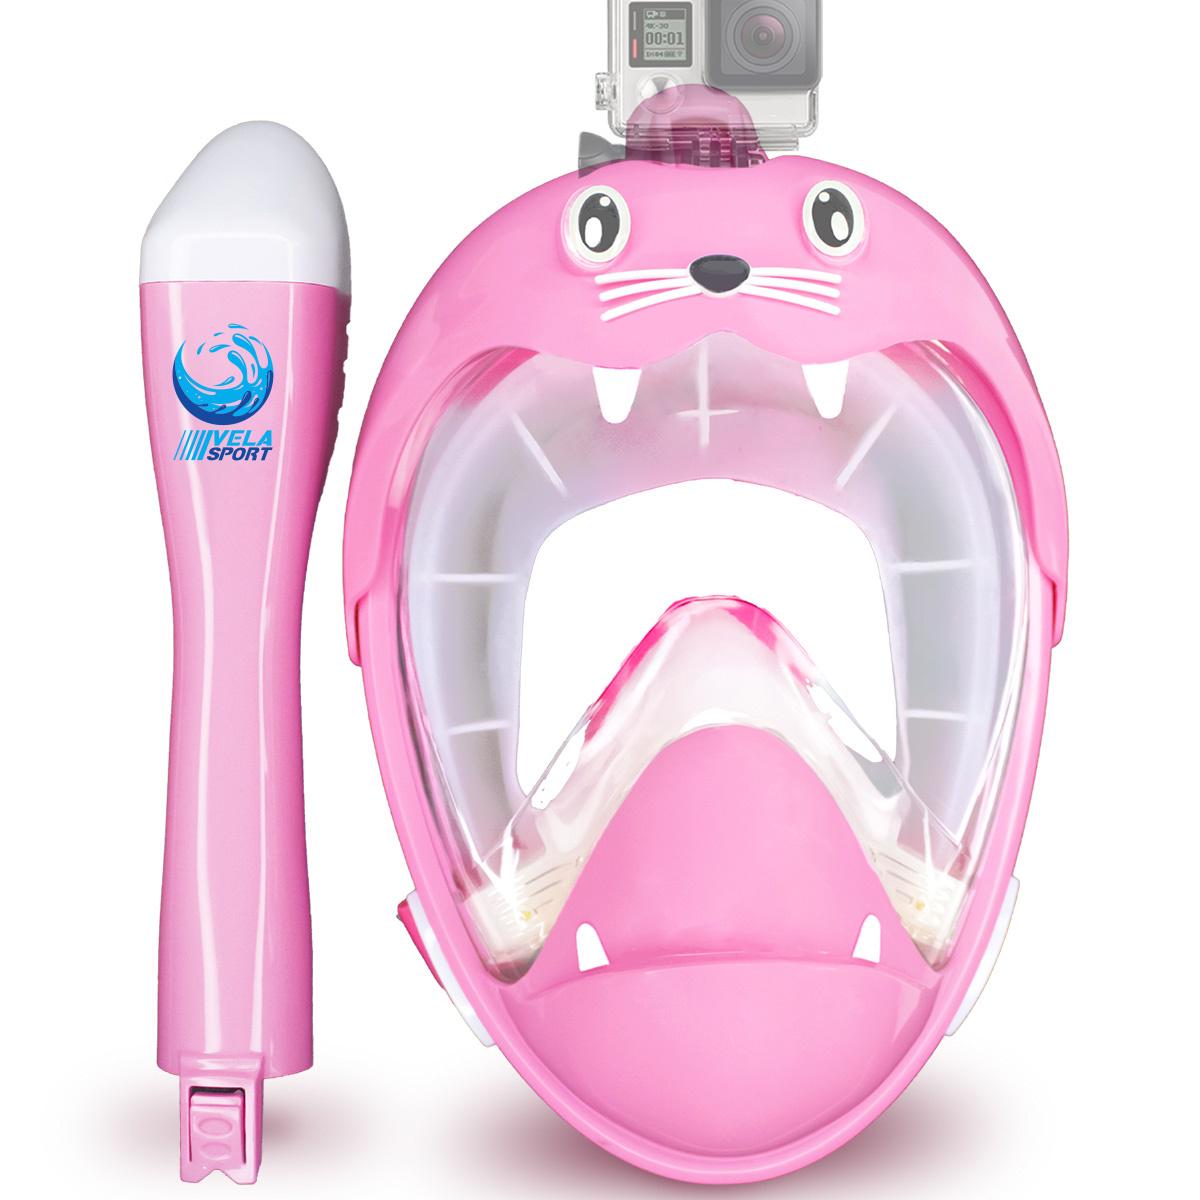 Повнолицьова маска для плавання Vela Sport Kids Lion XS дитяча 4 клапана Рожевий (00365)